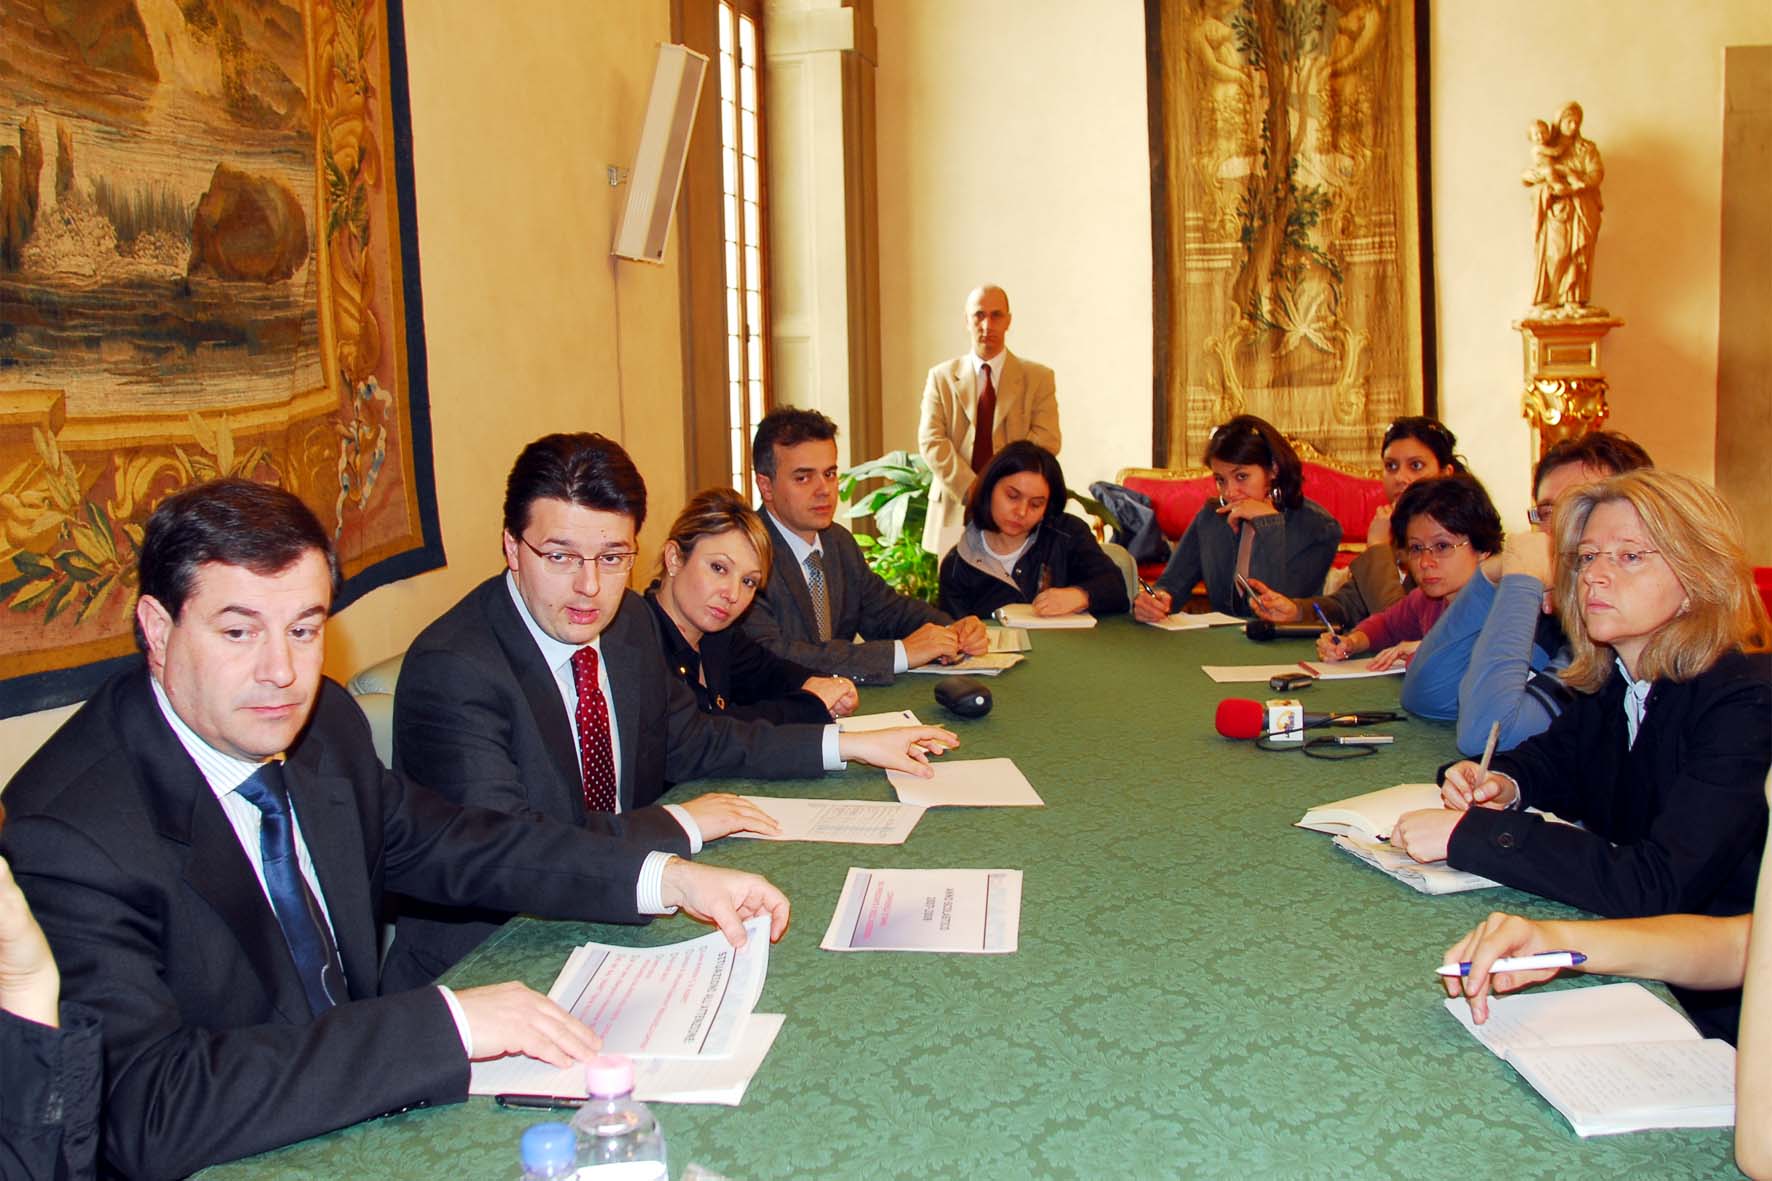 Assessore Giorgetti, Presidente Renzi, Assessore Simoni, Ing. Parenti